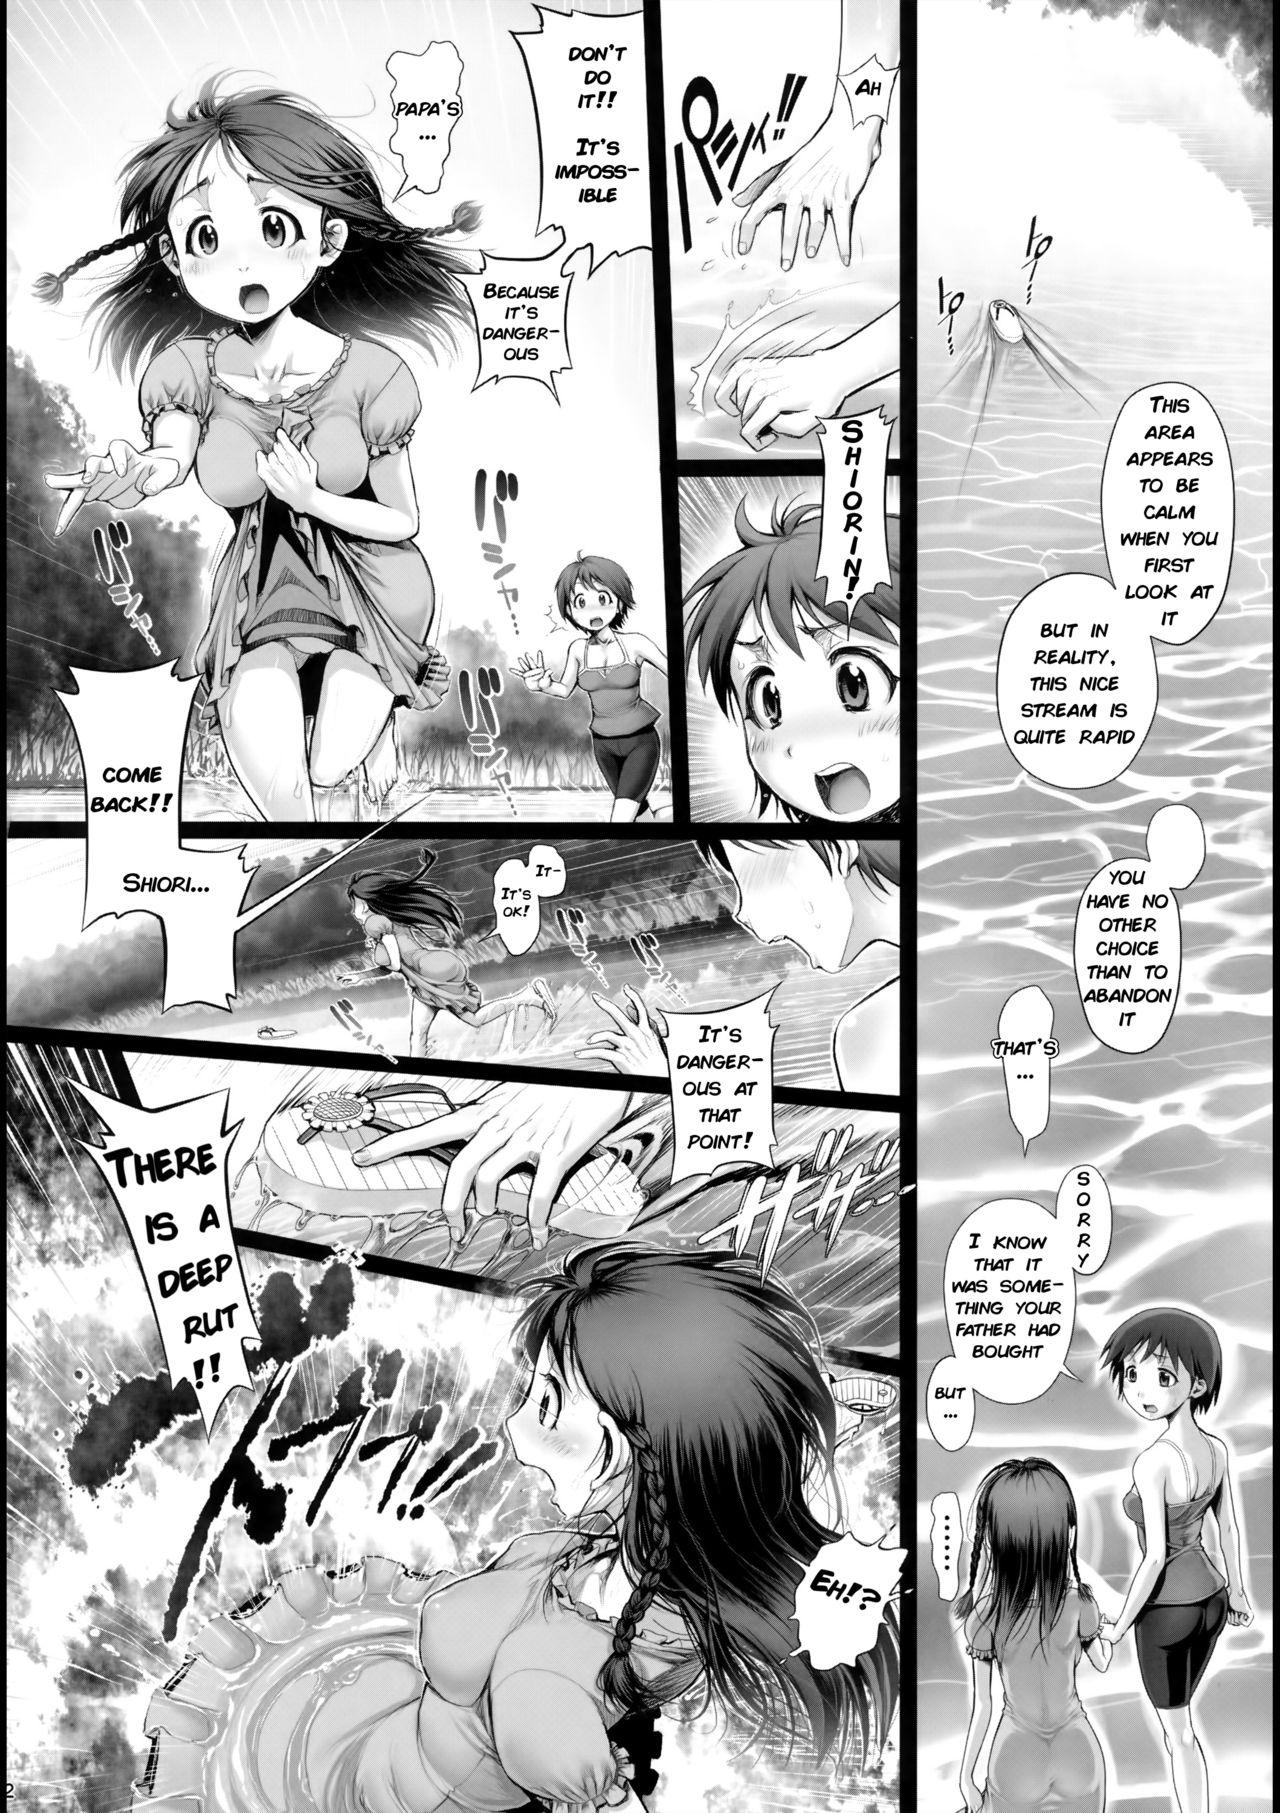 Gorda Angel Crisis 3 - Shizukana Kohan no Mori no Kage kara - Original Gay Anal - Page 3